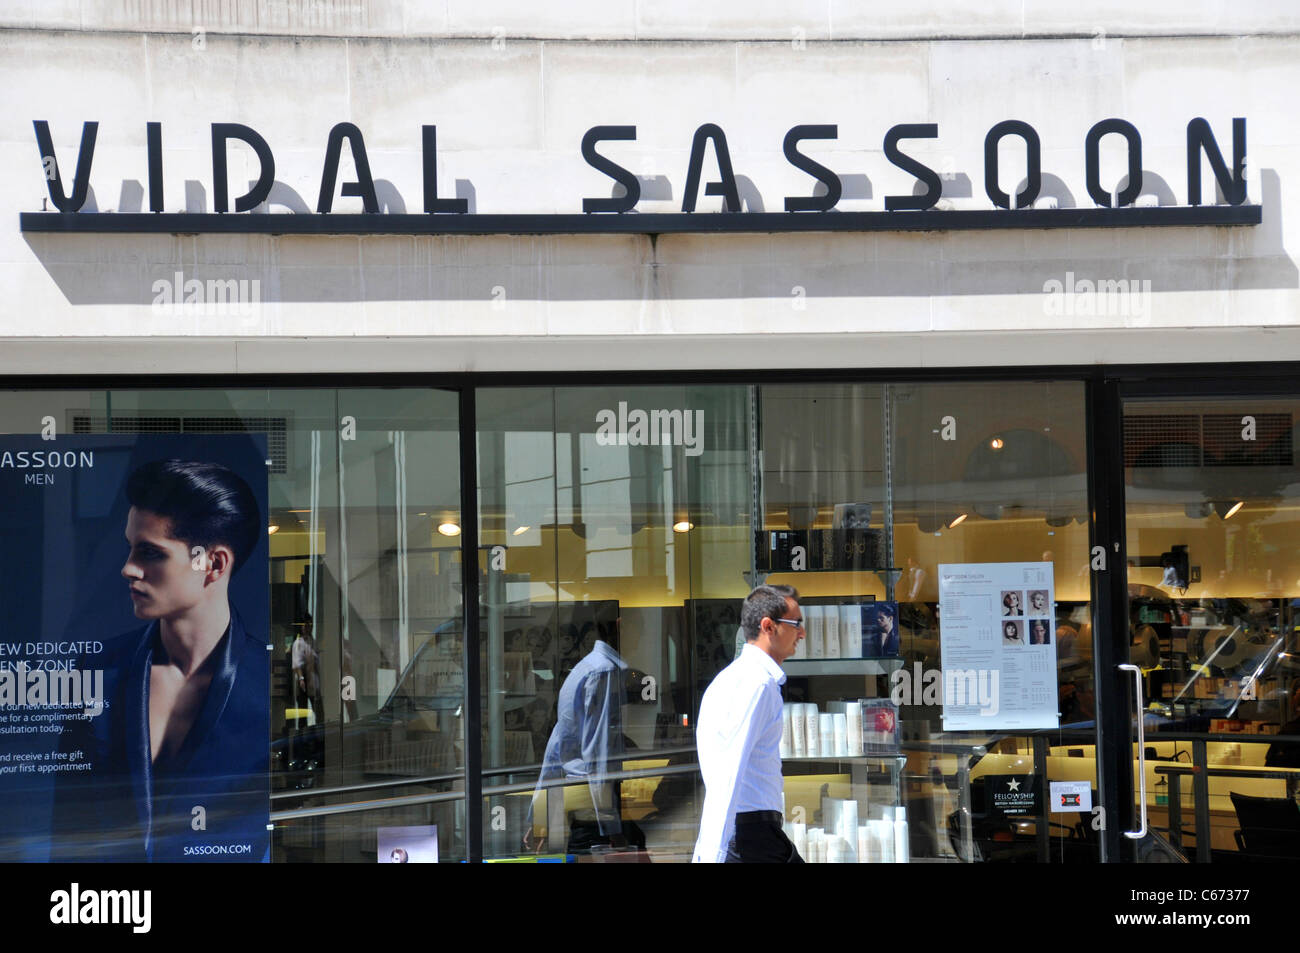 Vidal Sassoon salon London Stock Photo